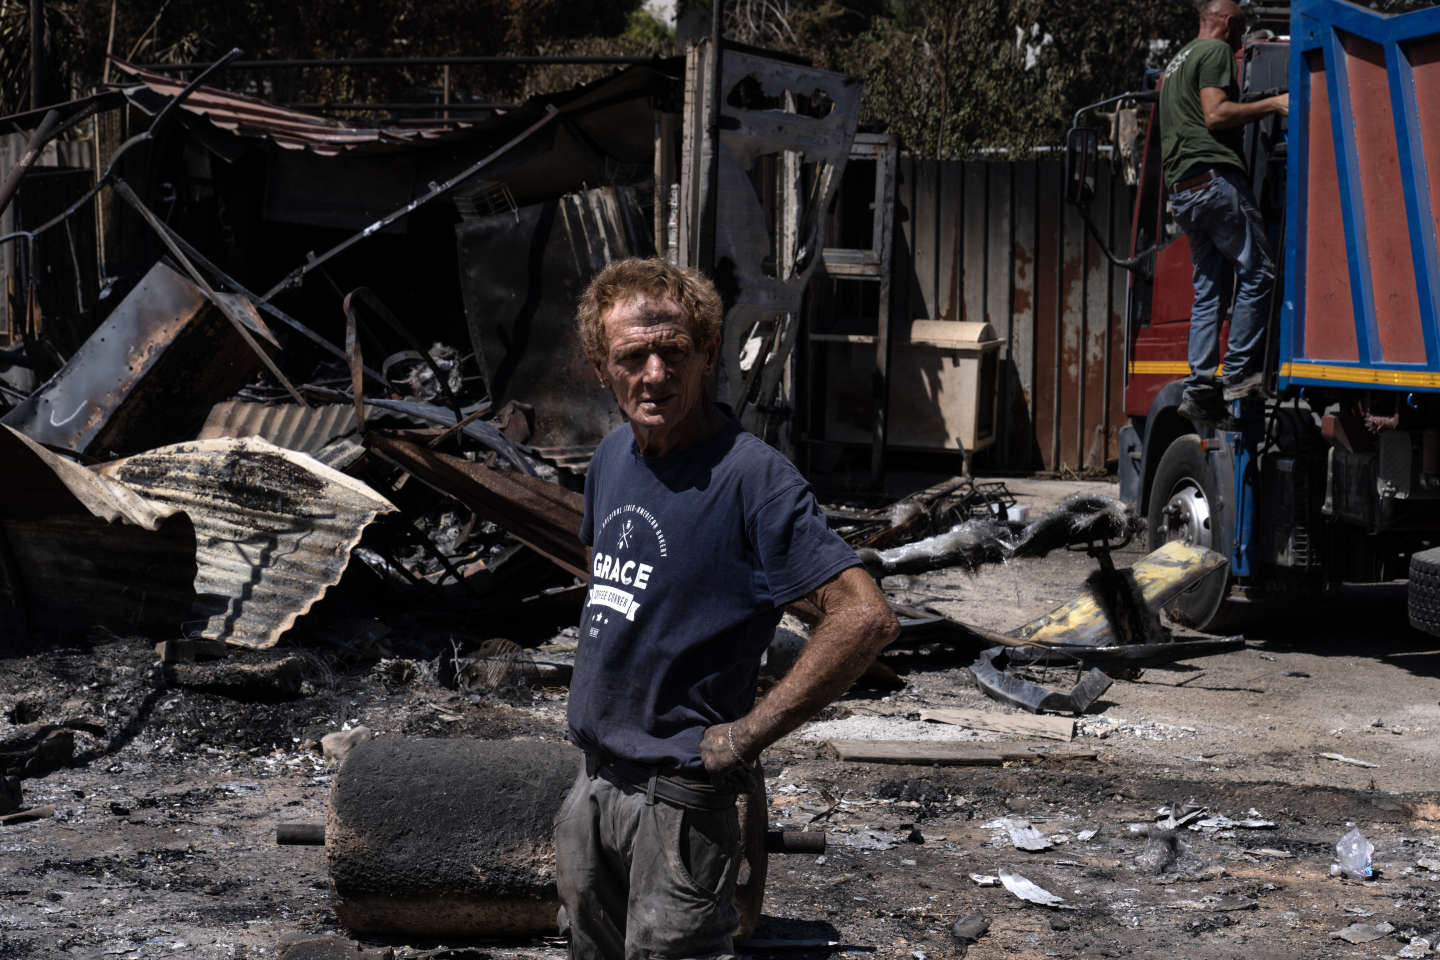 A Palerme, les incendies ravageurs laissent place à la colère et aux interrogations sur les responsabilités